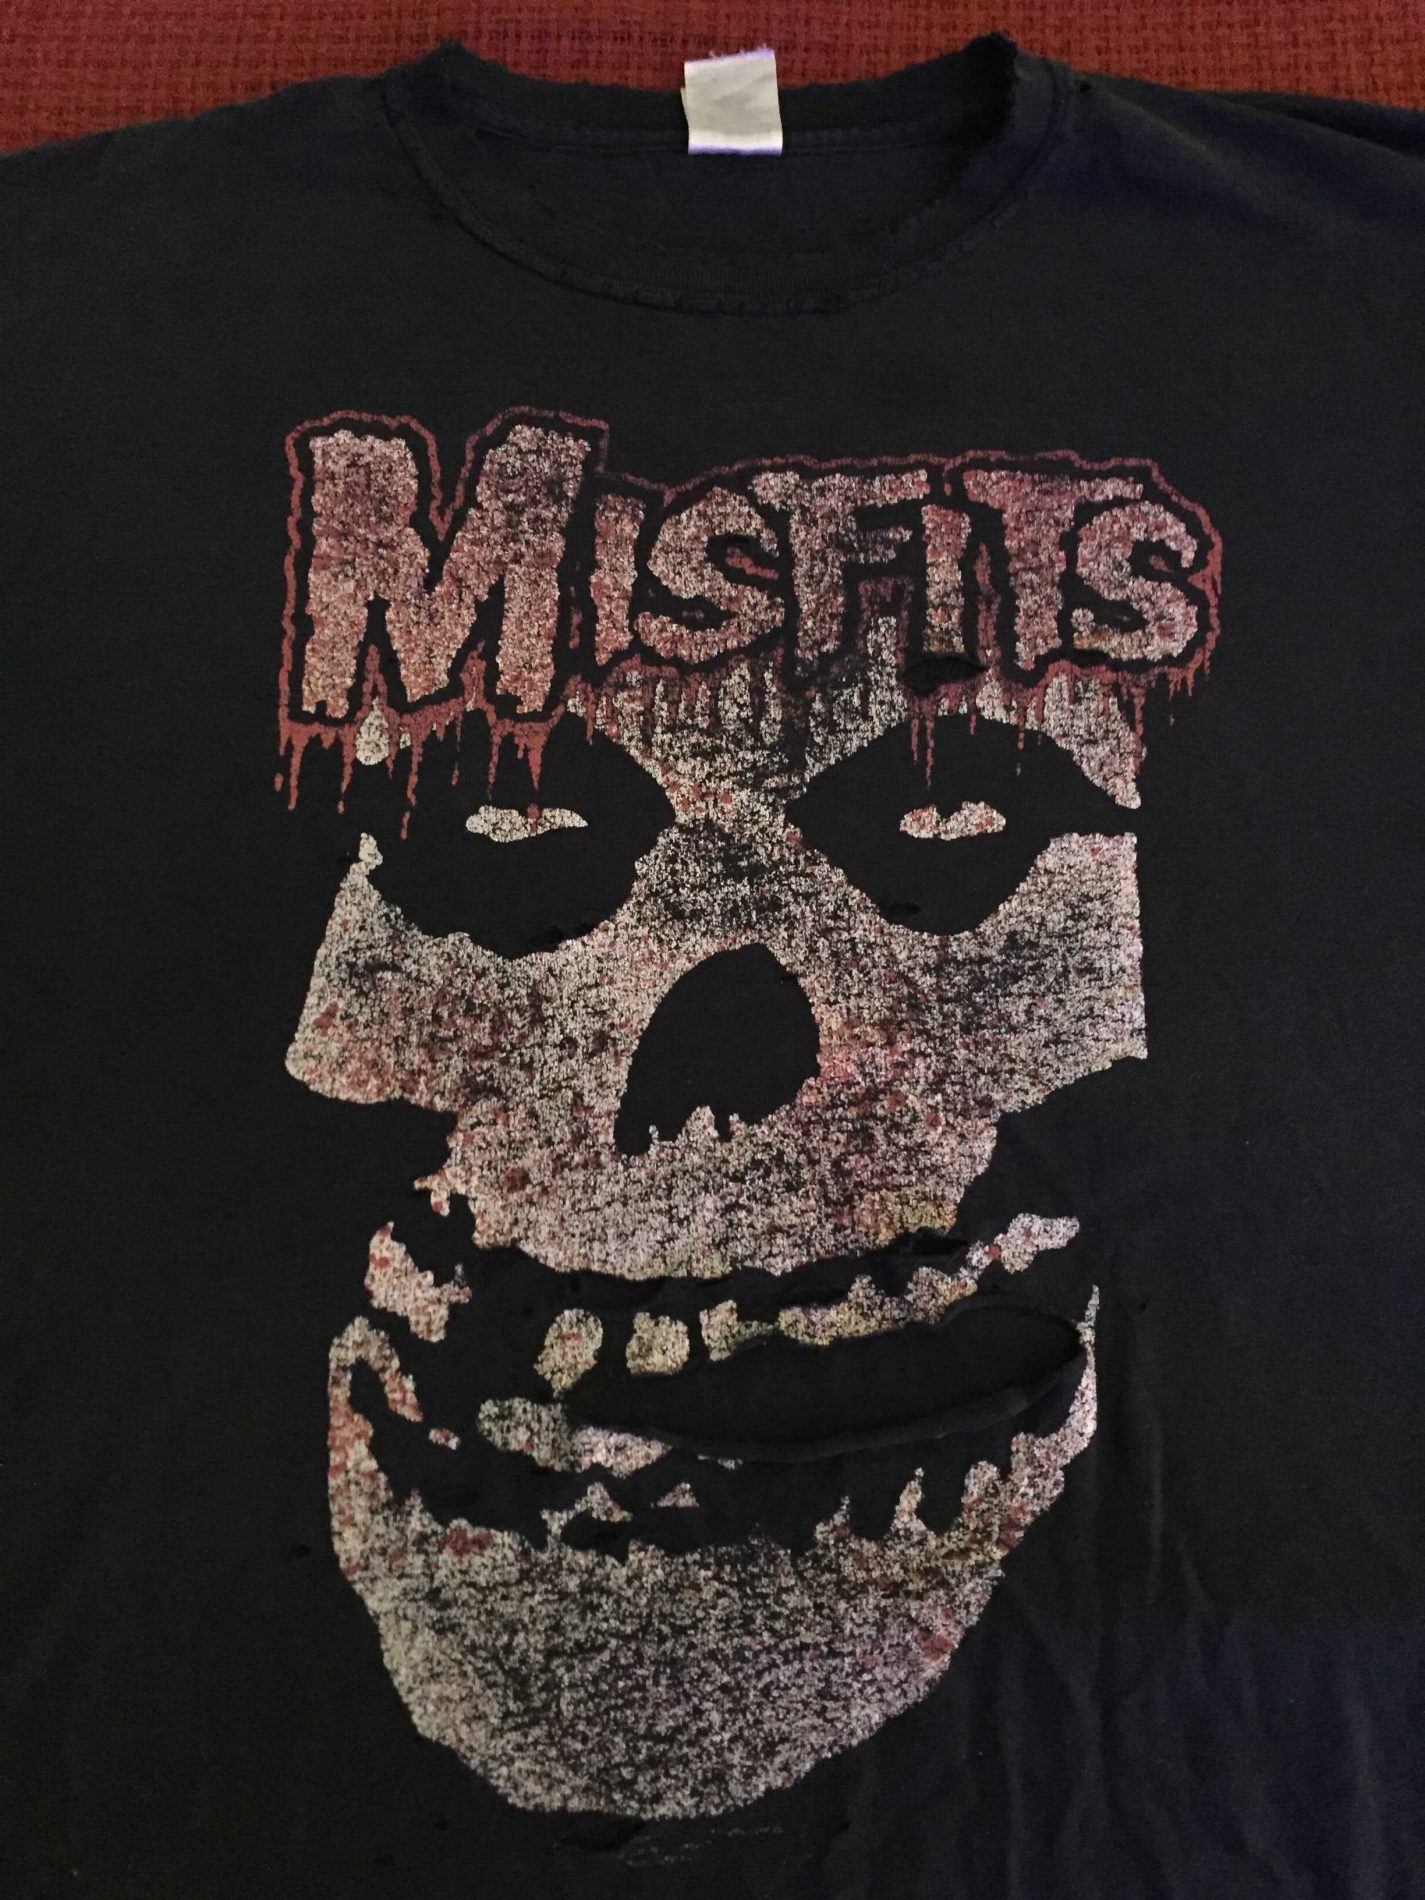 Horror Cornucopia - Misfits shirt transformation into a 3D skull - 01